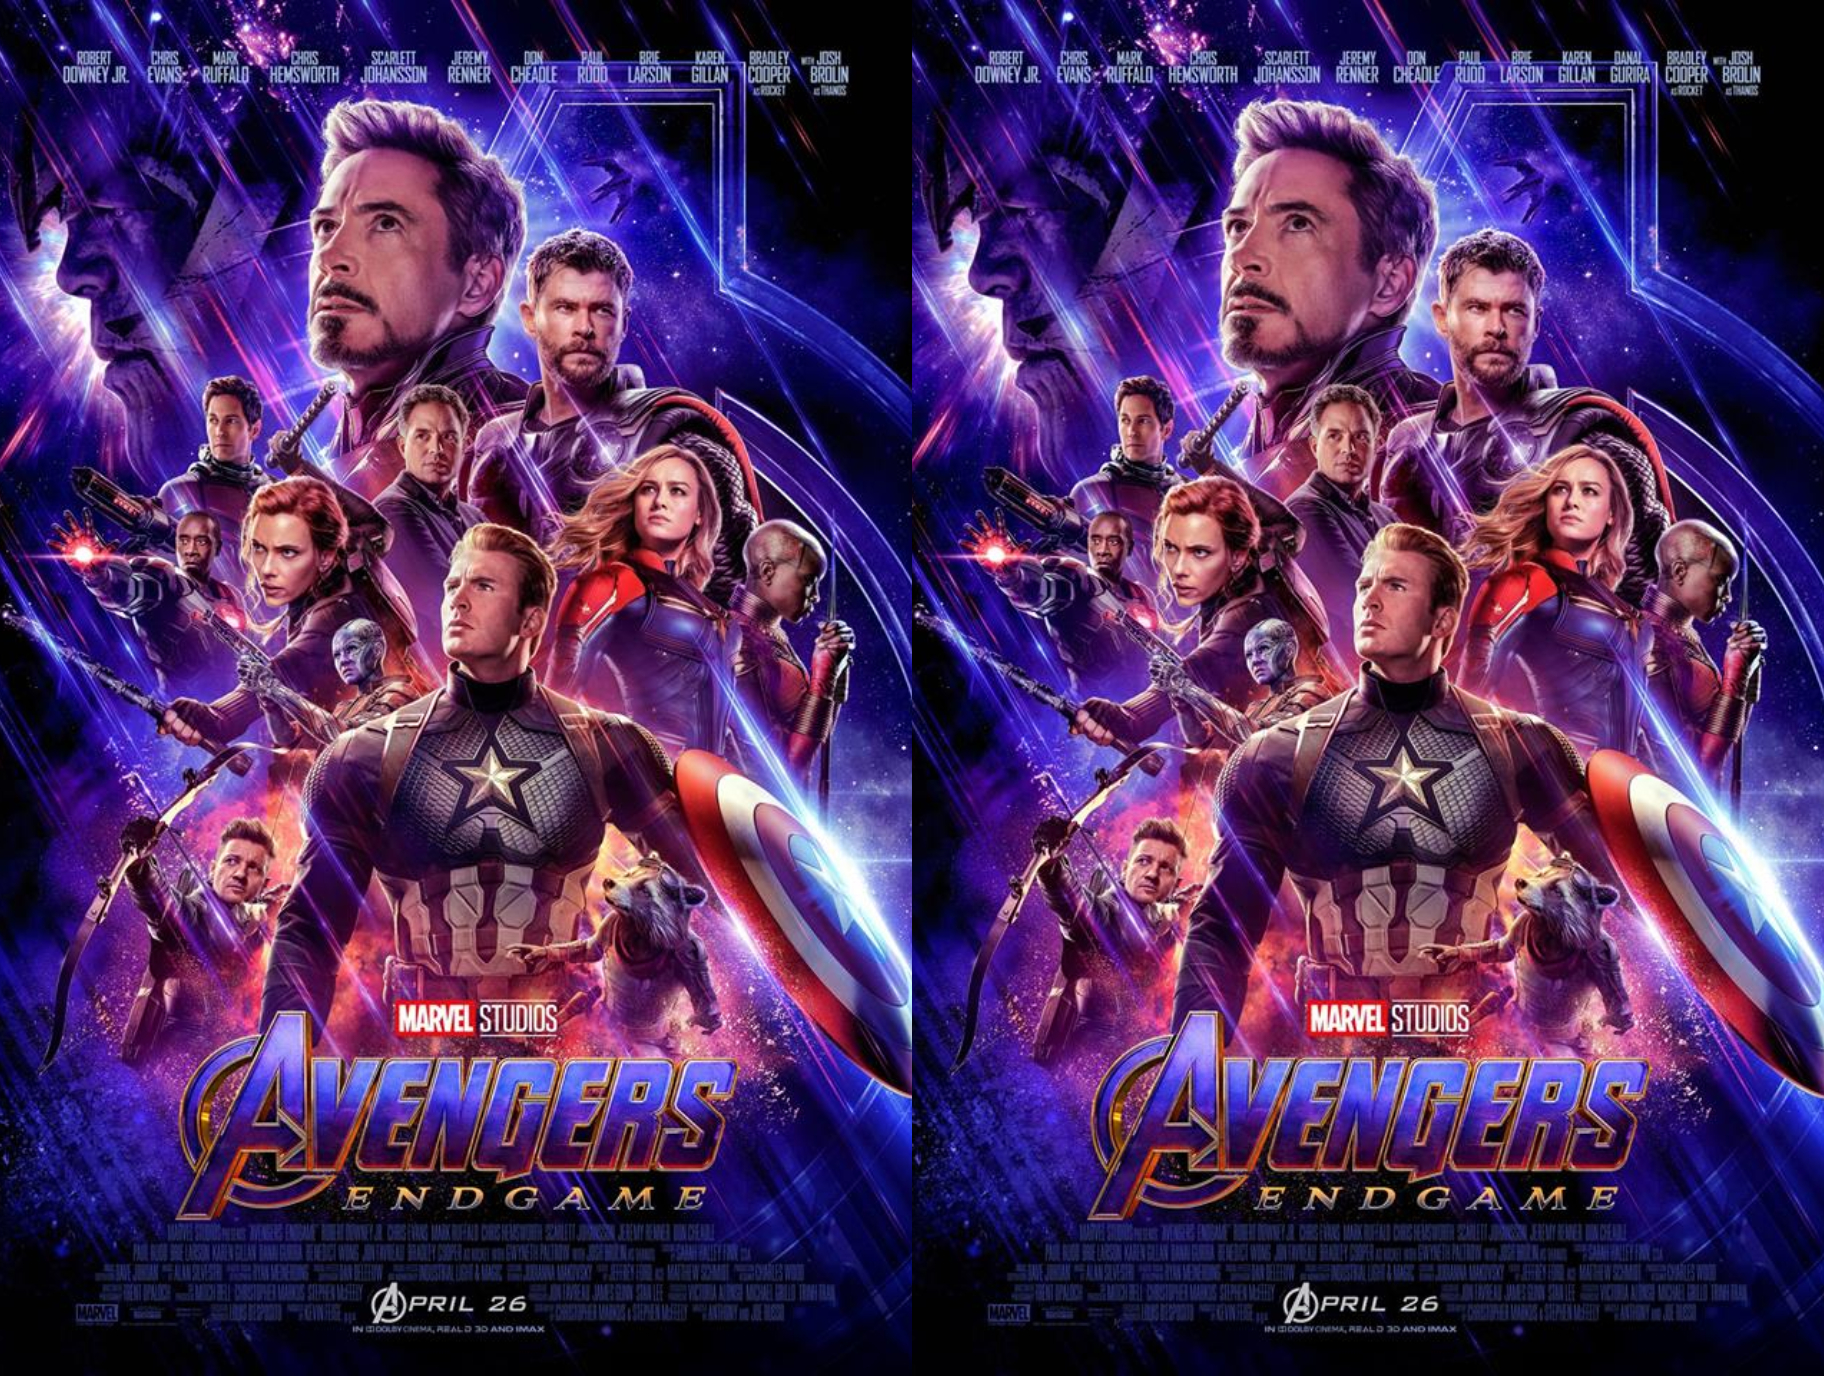 Marvel añade a Danai Gurira a los créditos en póster oficial de "Avengers: Endgame" (2019)